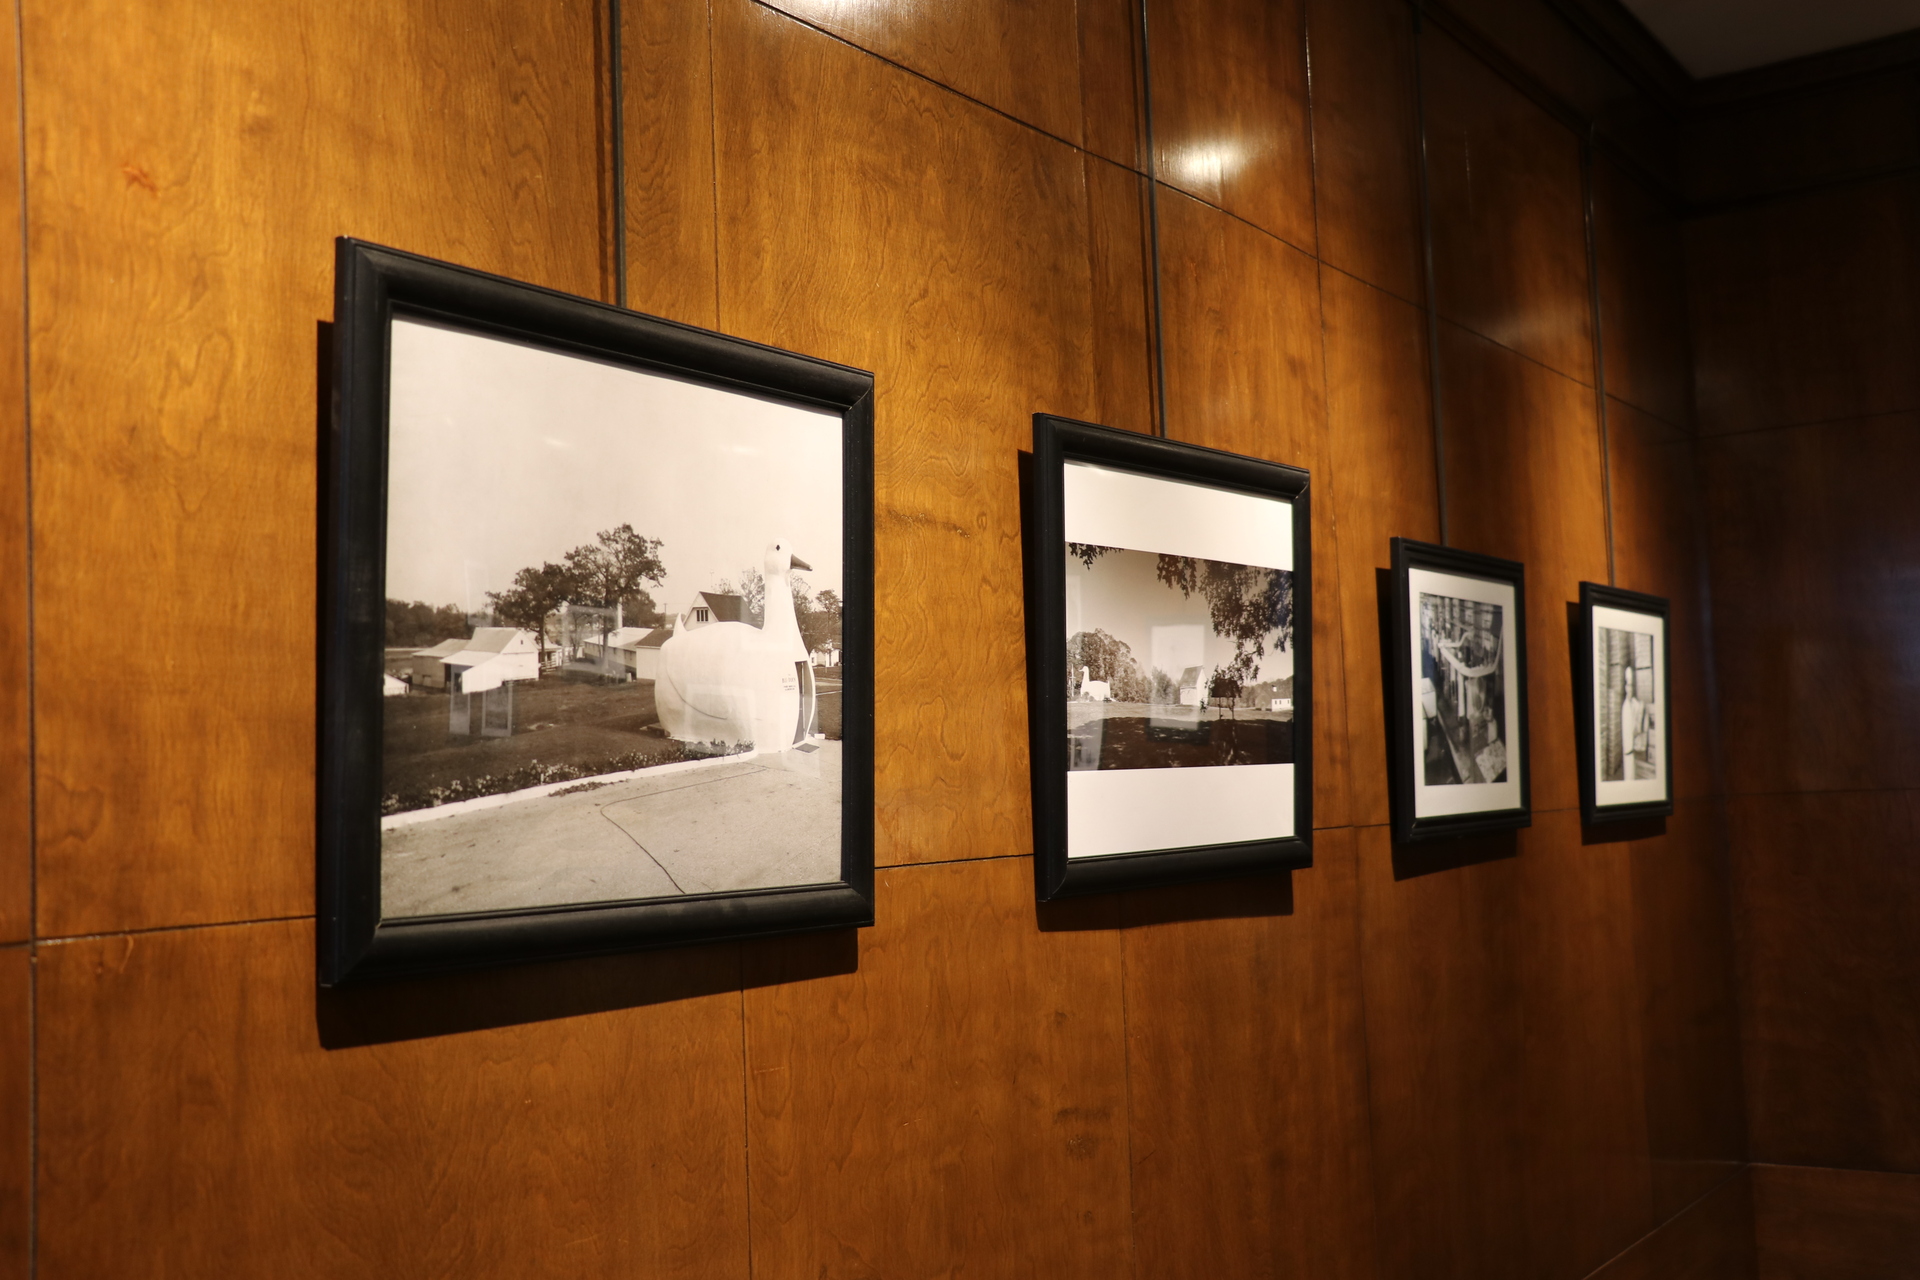 Historic photos displayed in Dr. Van Scoy's art exhibit.